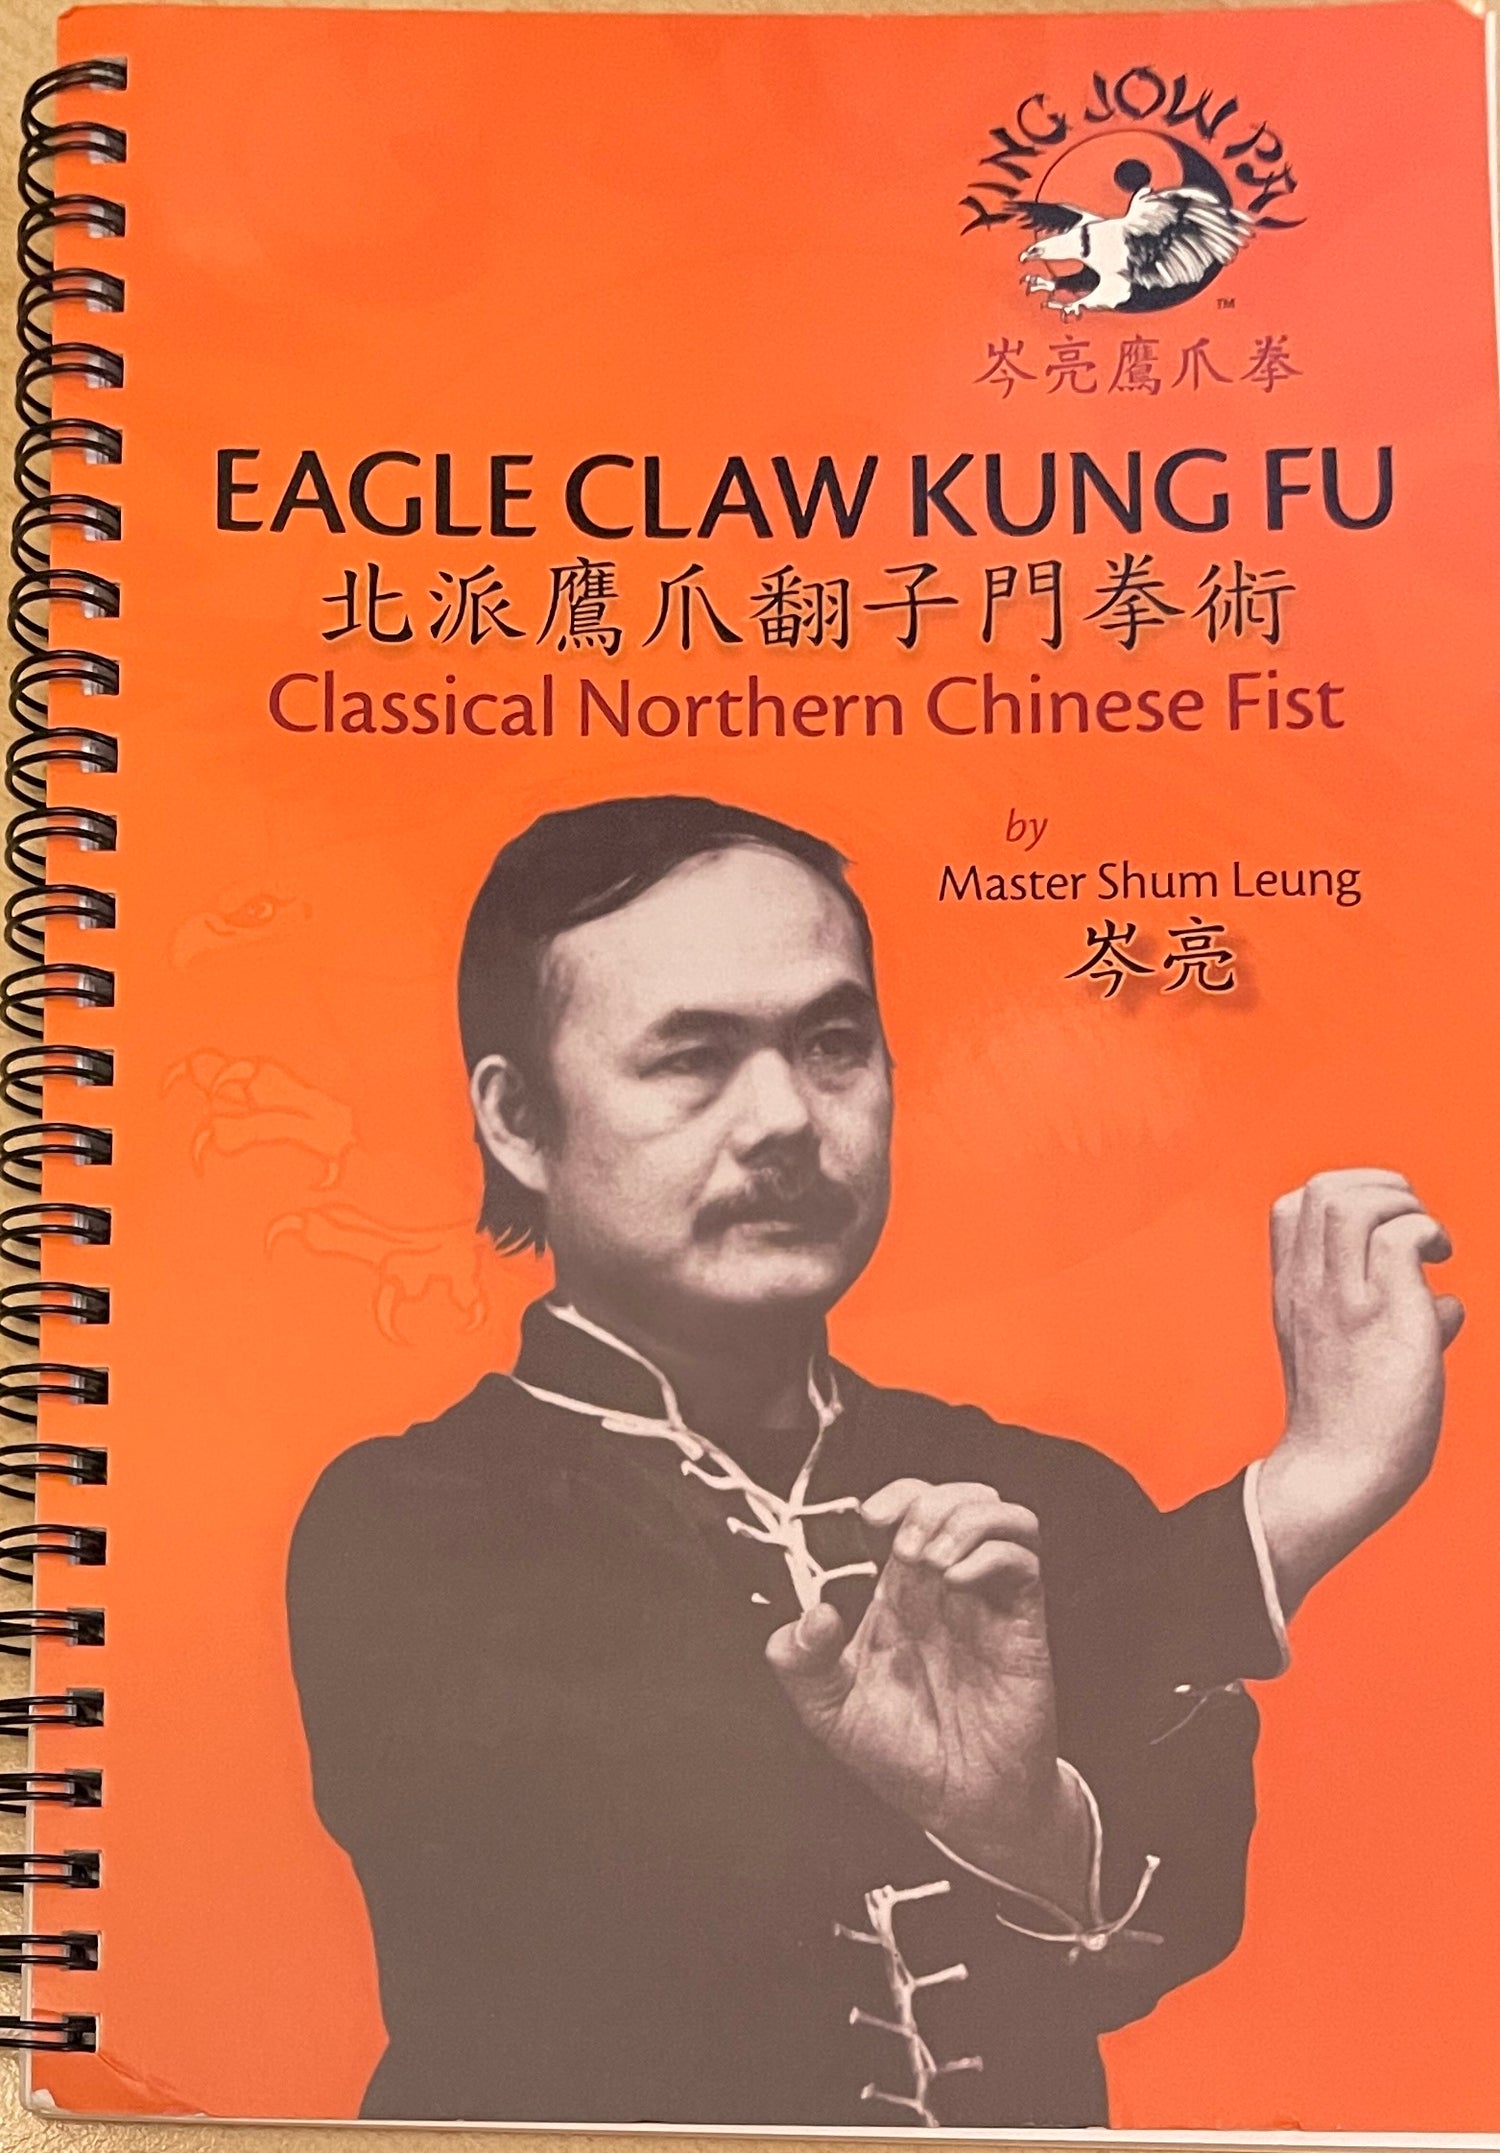 Eagle Claw Kung Fu: Libro clásico del puño del norte de China de Shum Leung (usado) 